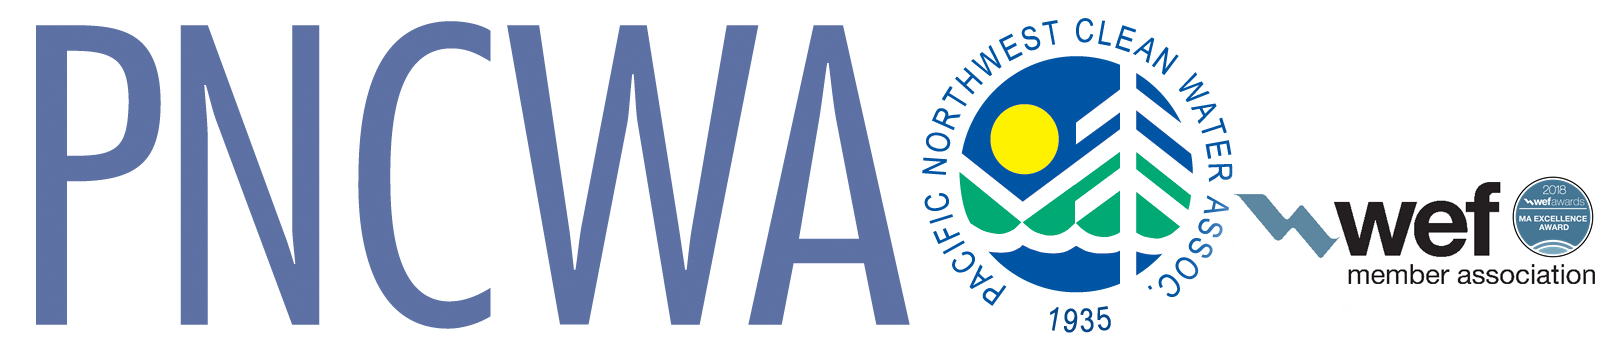 PNCWA logo